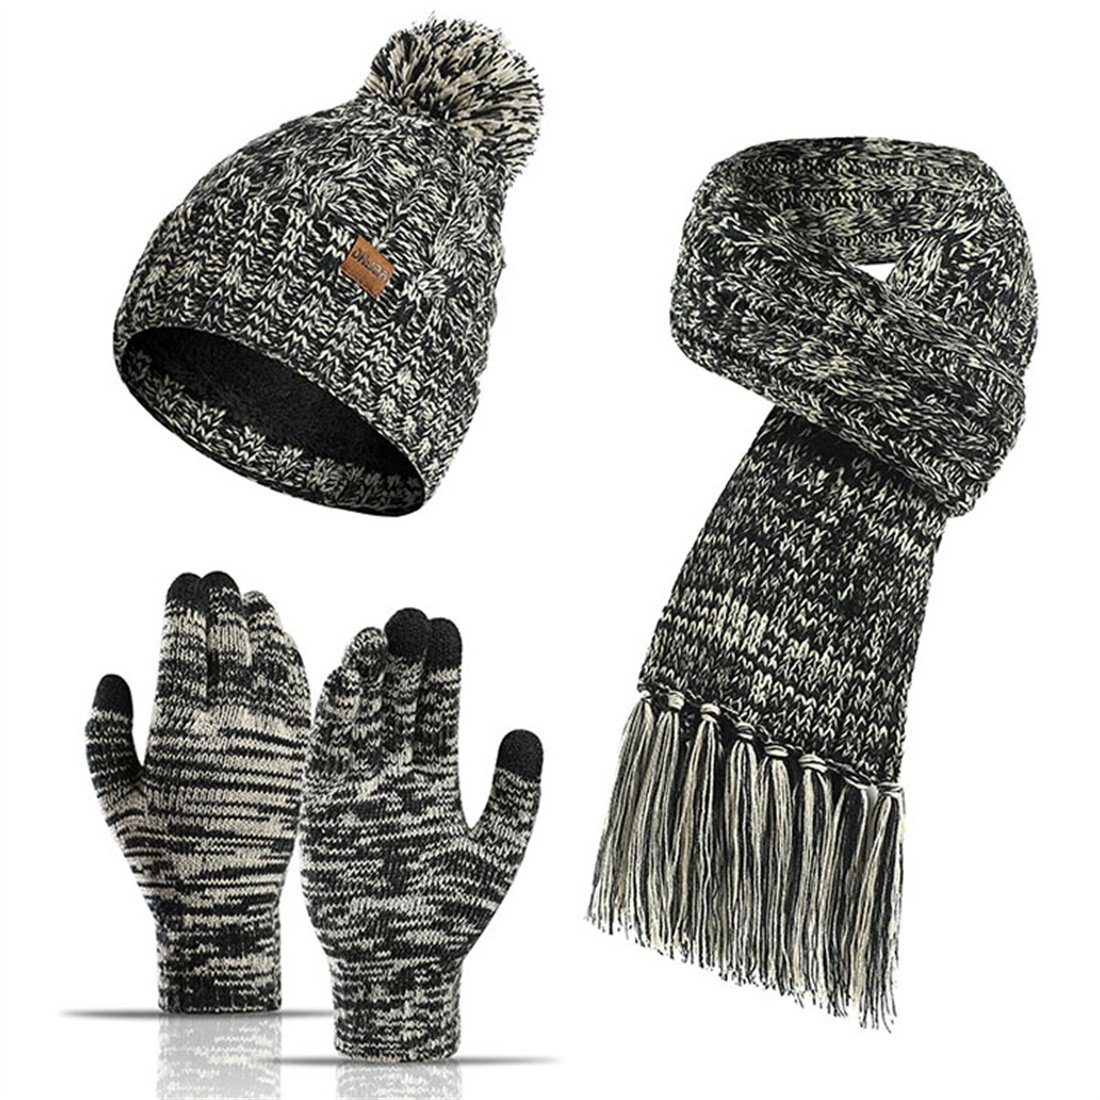 DÖRÖY Strickmütze Wintermütze aus Wolle, Mütze + Schal + Touchscreen-Handschuhe 3er-Set Schwarz | Strickmützen